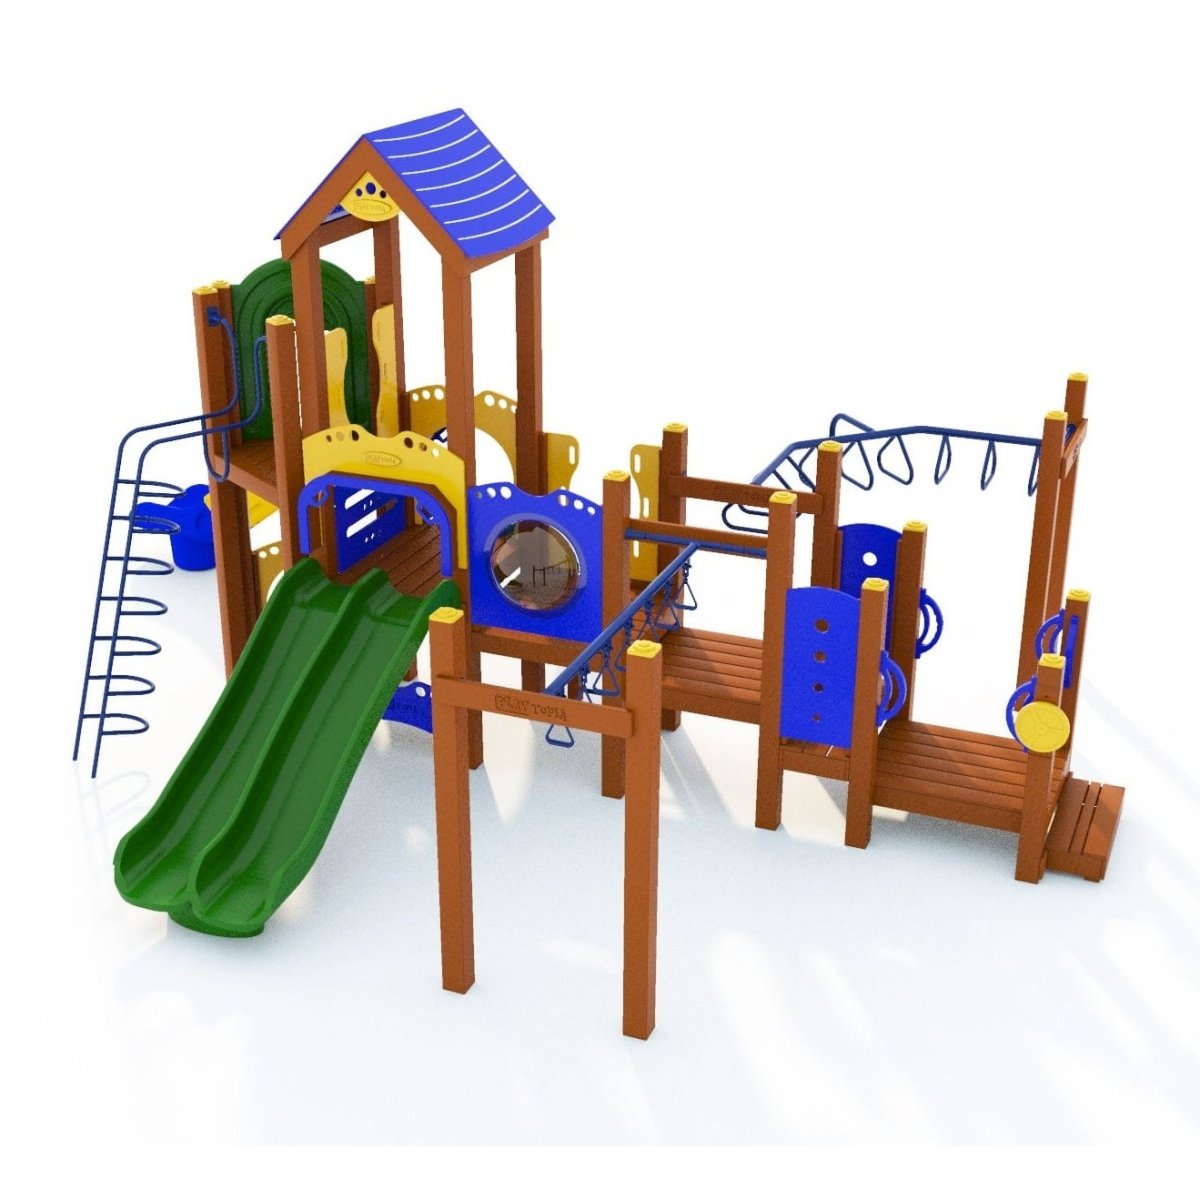 Kirkwood Playset - School-Age Playgrounds - Playtopia, Inc.